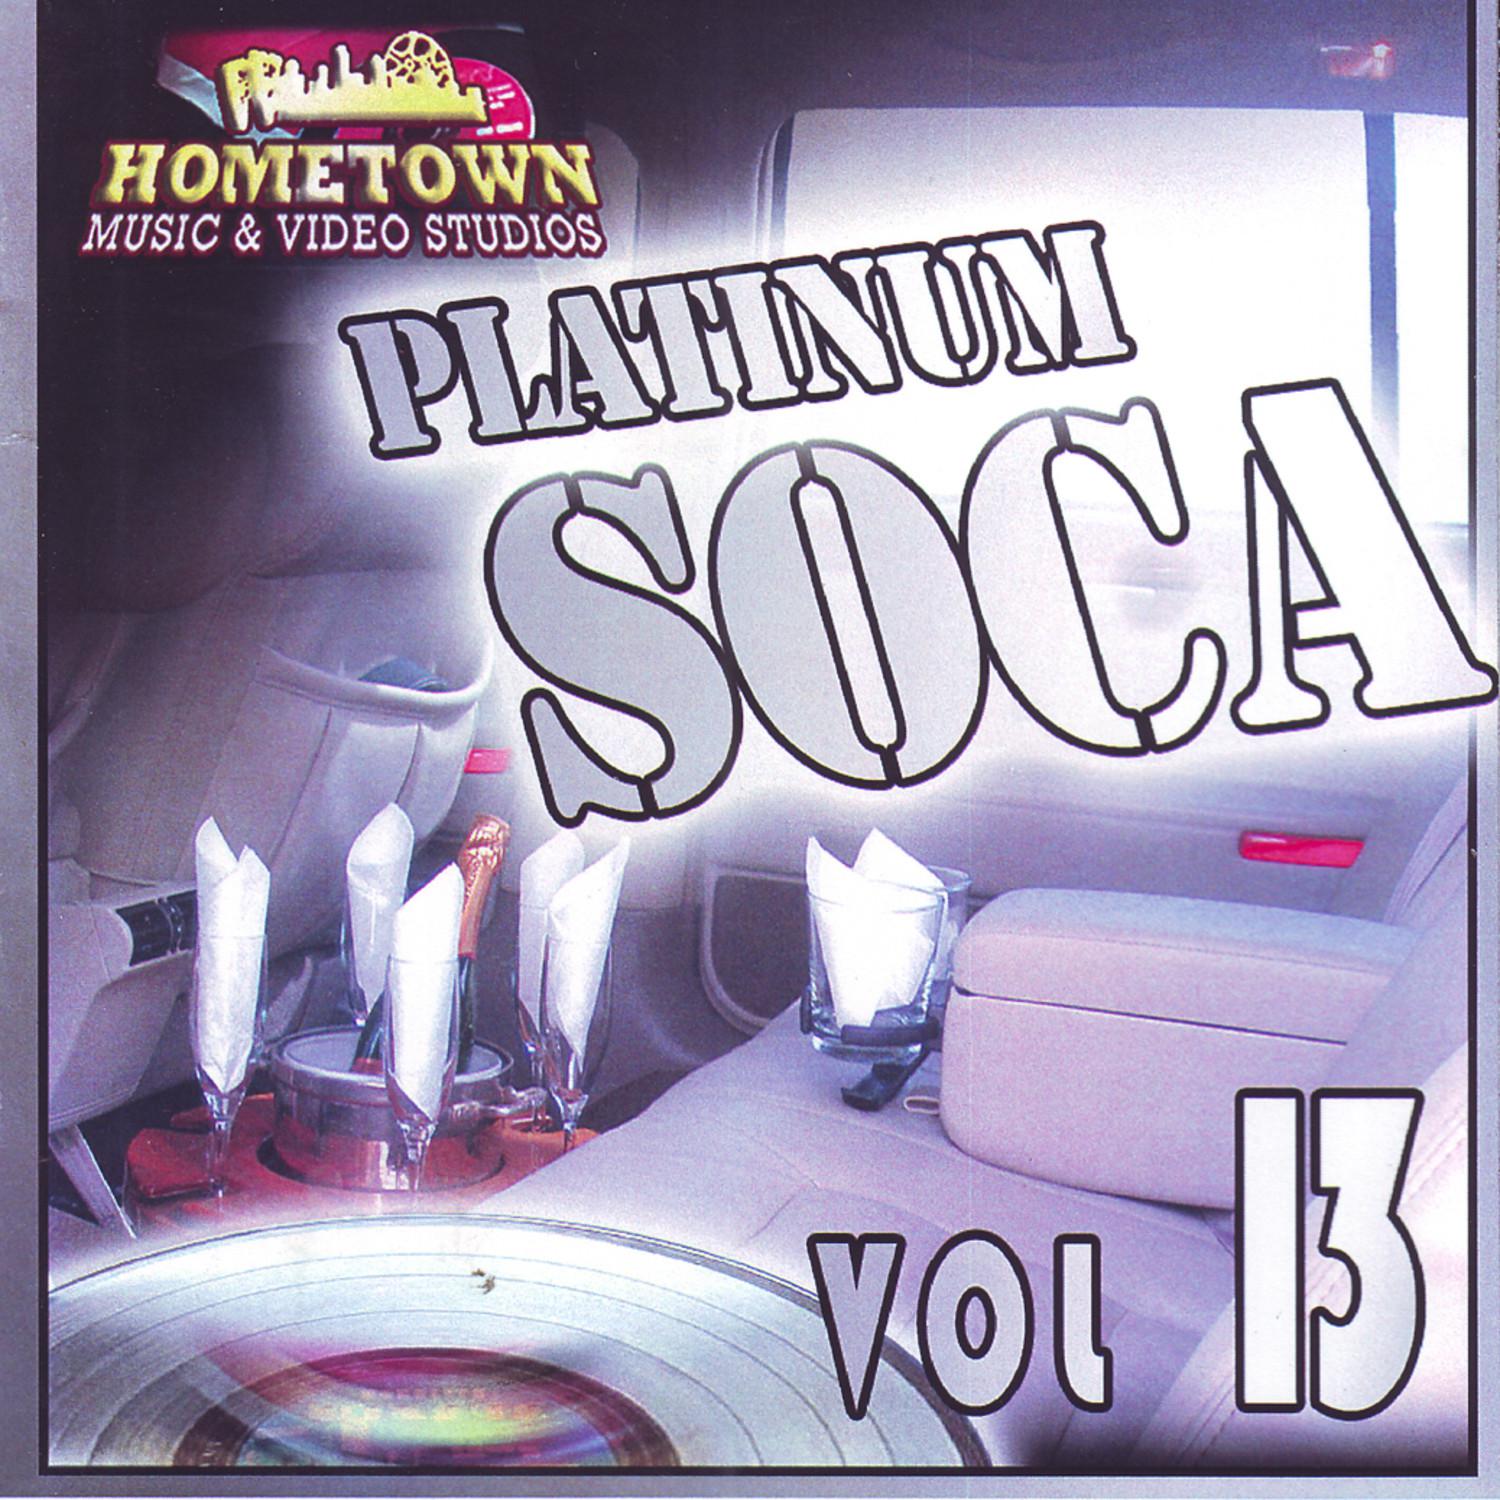 Platinum Soca vol.13